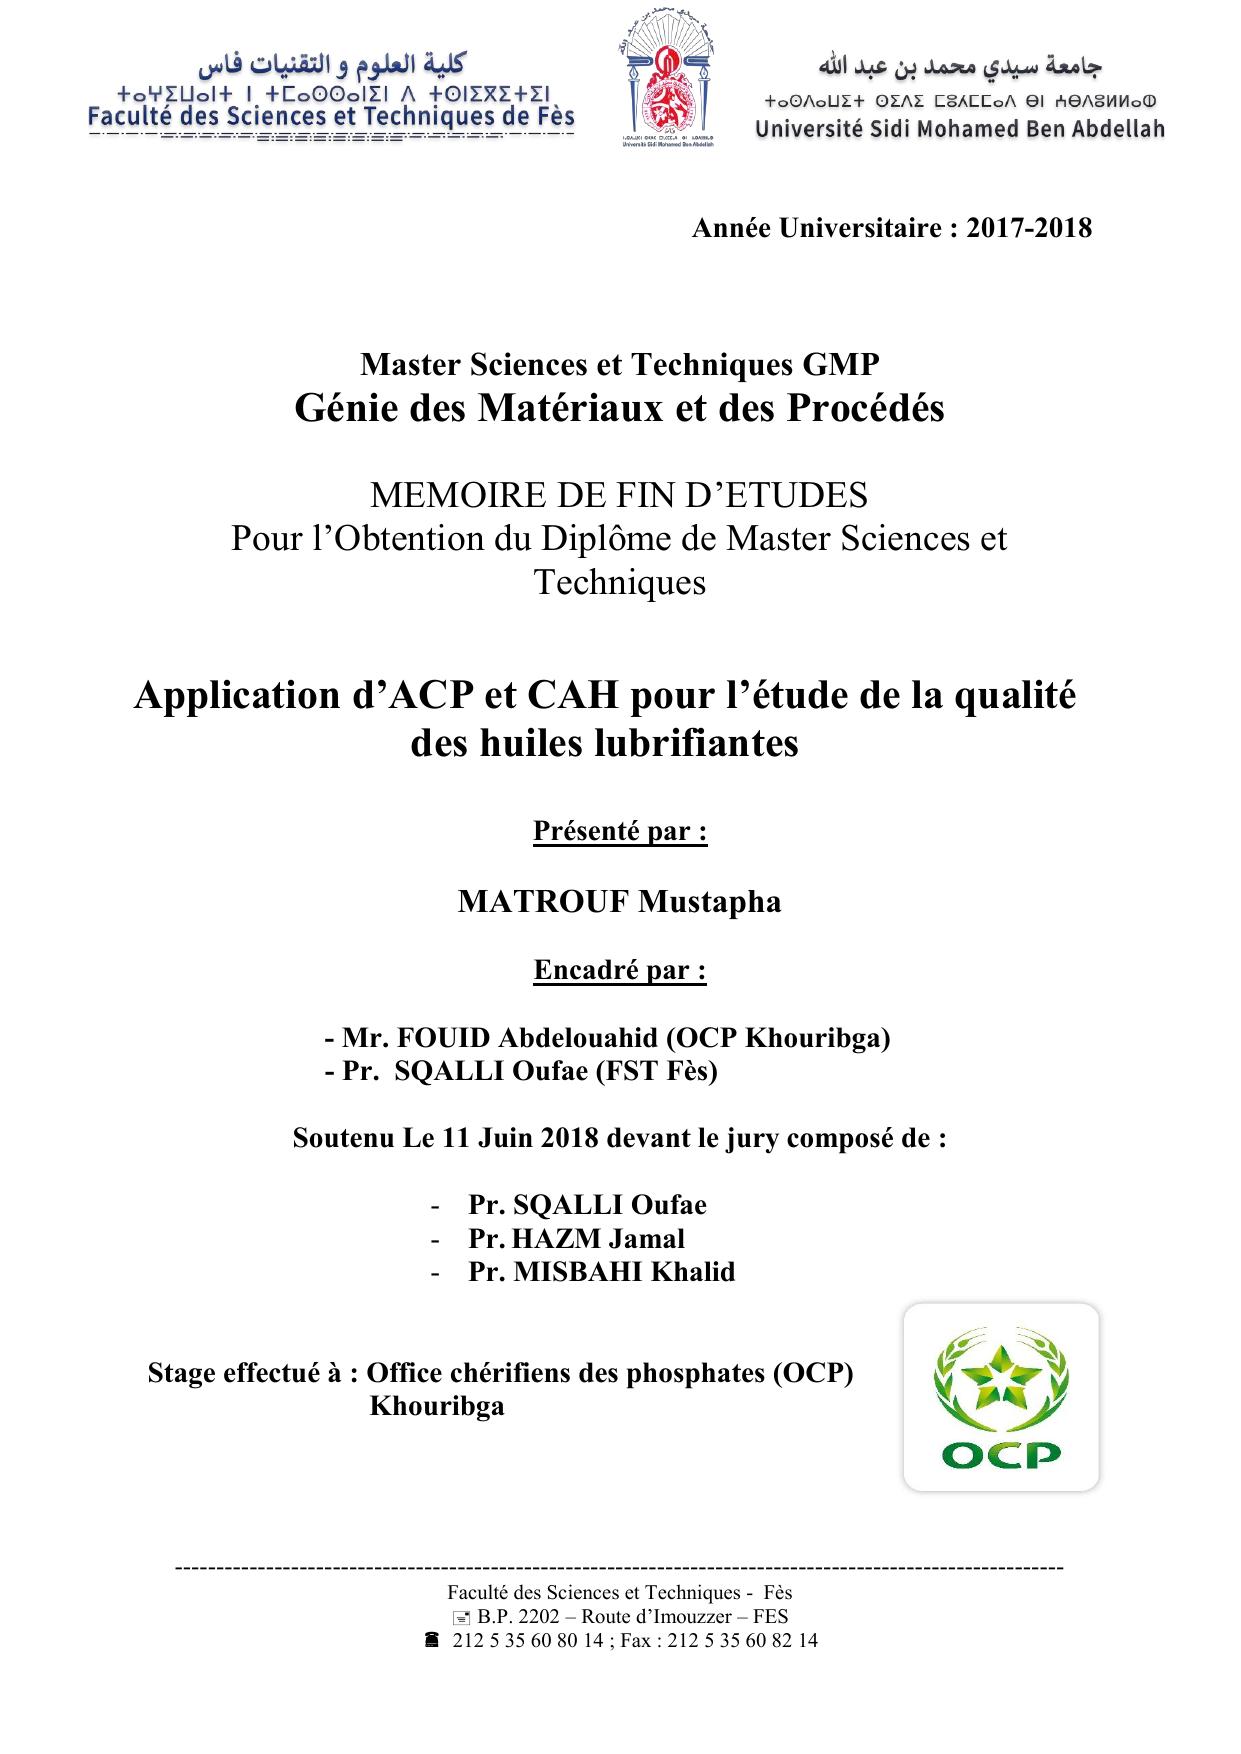 Application d’ACP et CAH pour l’étude de la qualité des huiles lubrifiantes